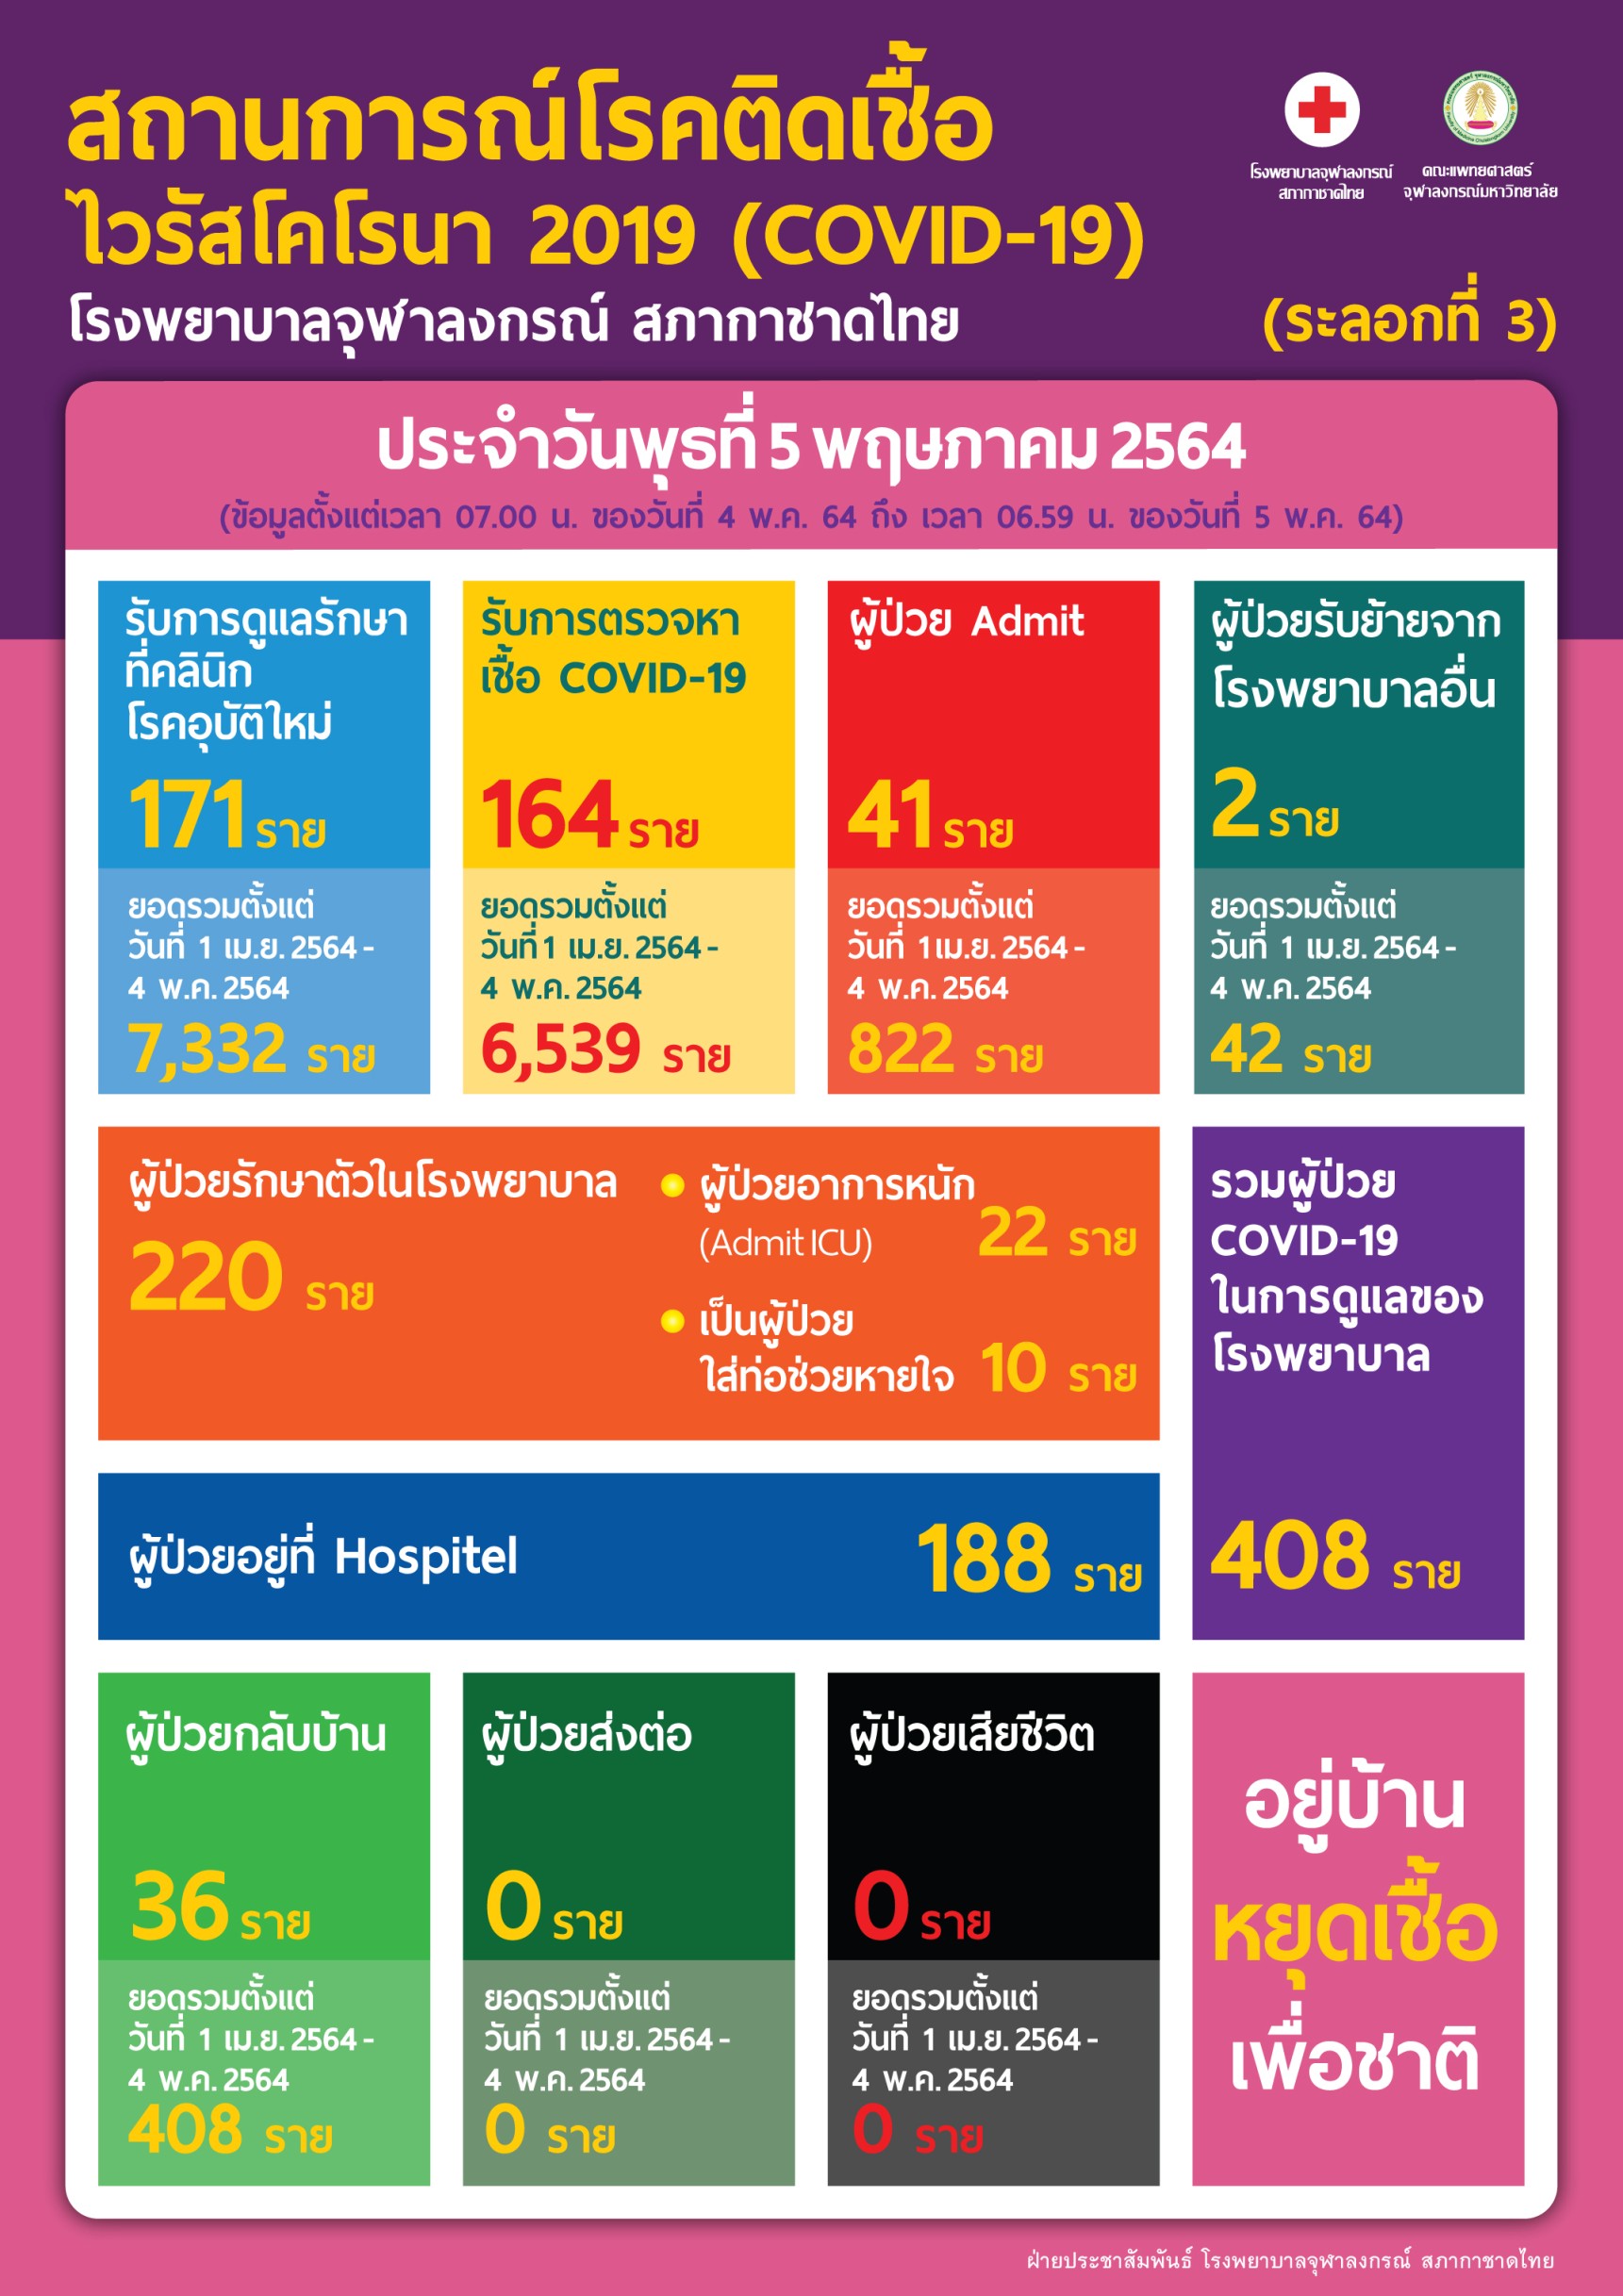 สถานการณ์โรคติดเชื้อ ไวรัสโคโรนา 2019 (COVID-19) โรงพยาบาลจุฬาลงกรณ์ สภากาชาดไทย (ระลอกที่ 3) ประจำวันพุธที่ 5 พฤษภาคม 2564